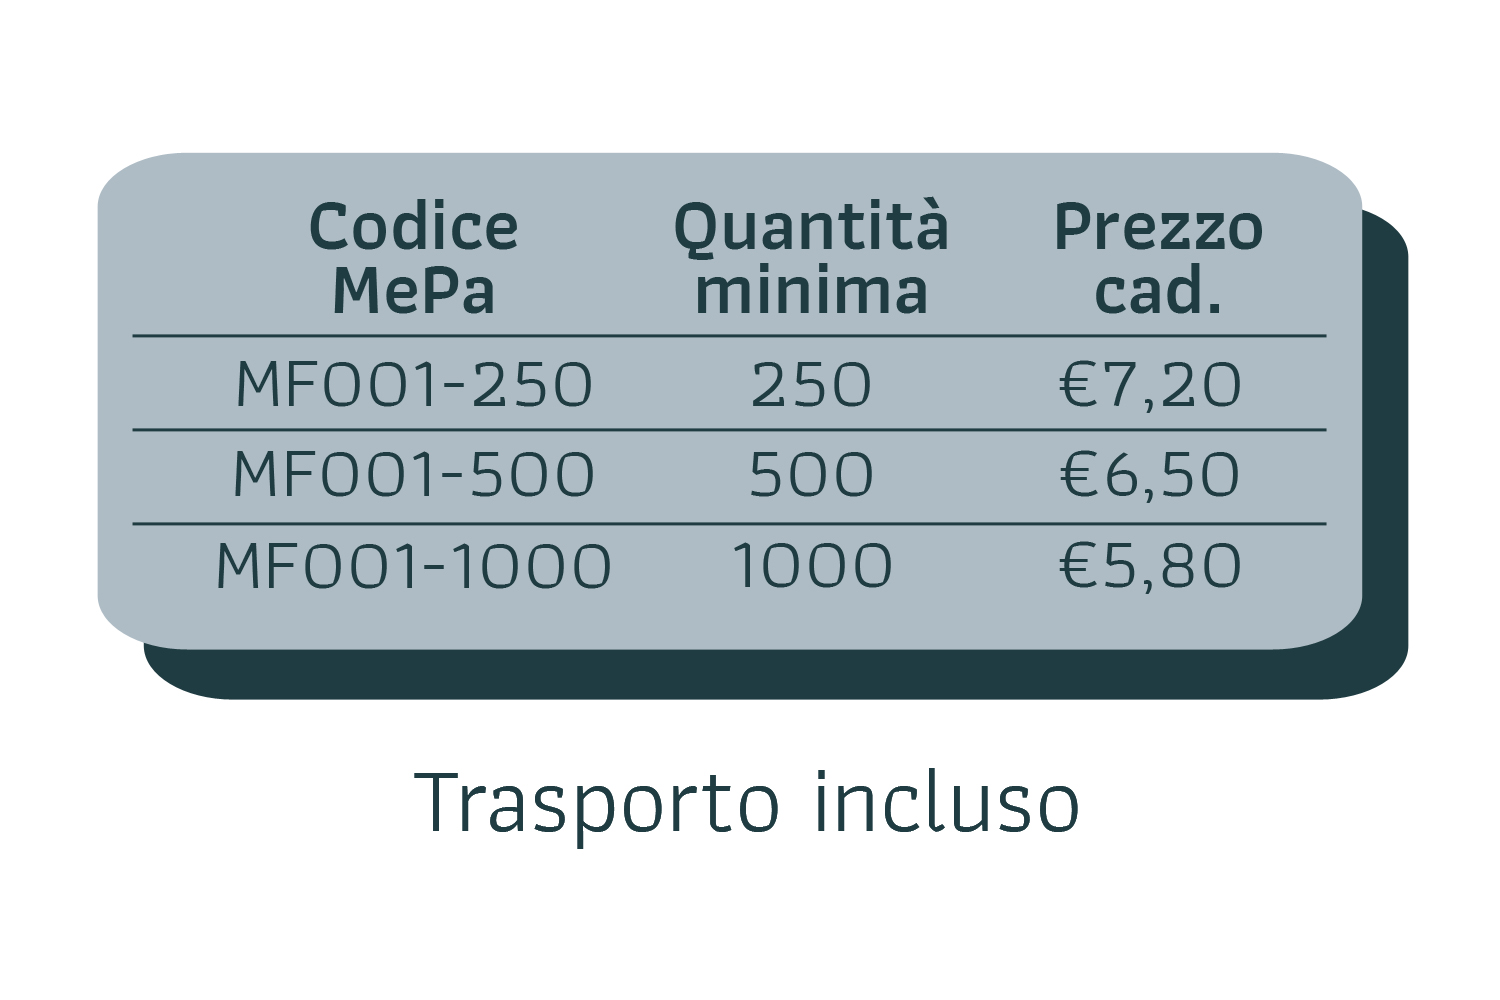 7,20€ caduno per 250 pezzi; 6,50€ caduno per 500 pezzi; 5,80€ caduno per 1000 pezzi;